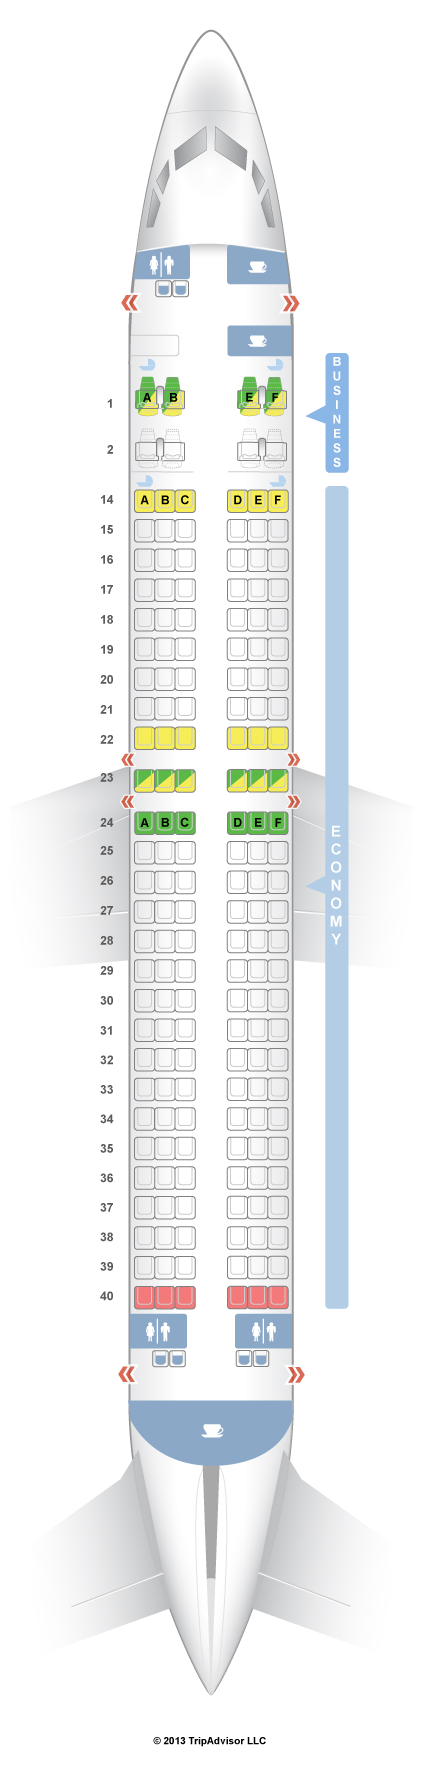 Fiji Airways Seating Chart